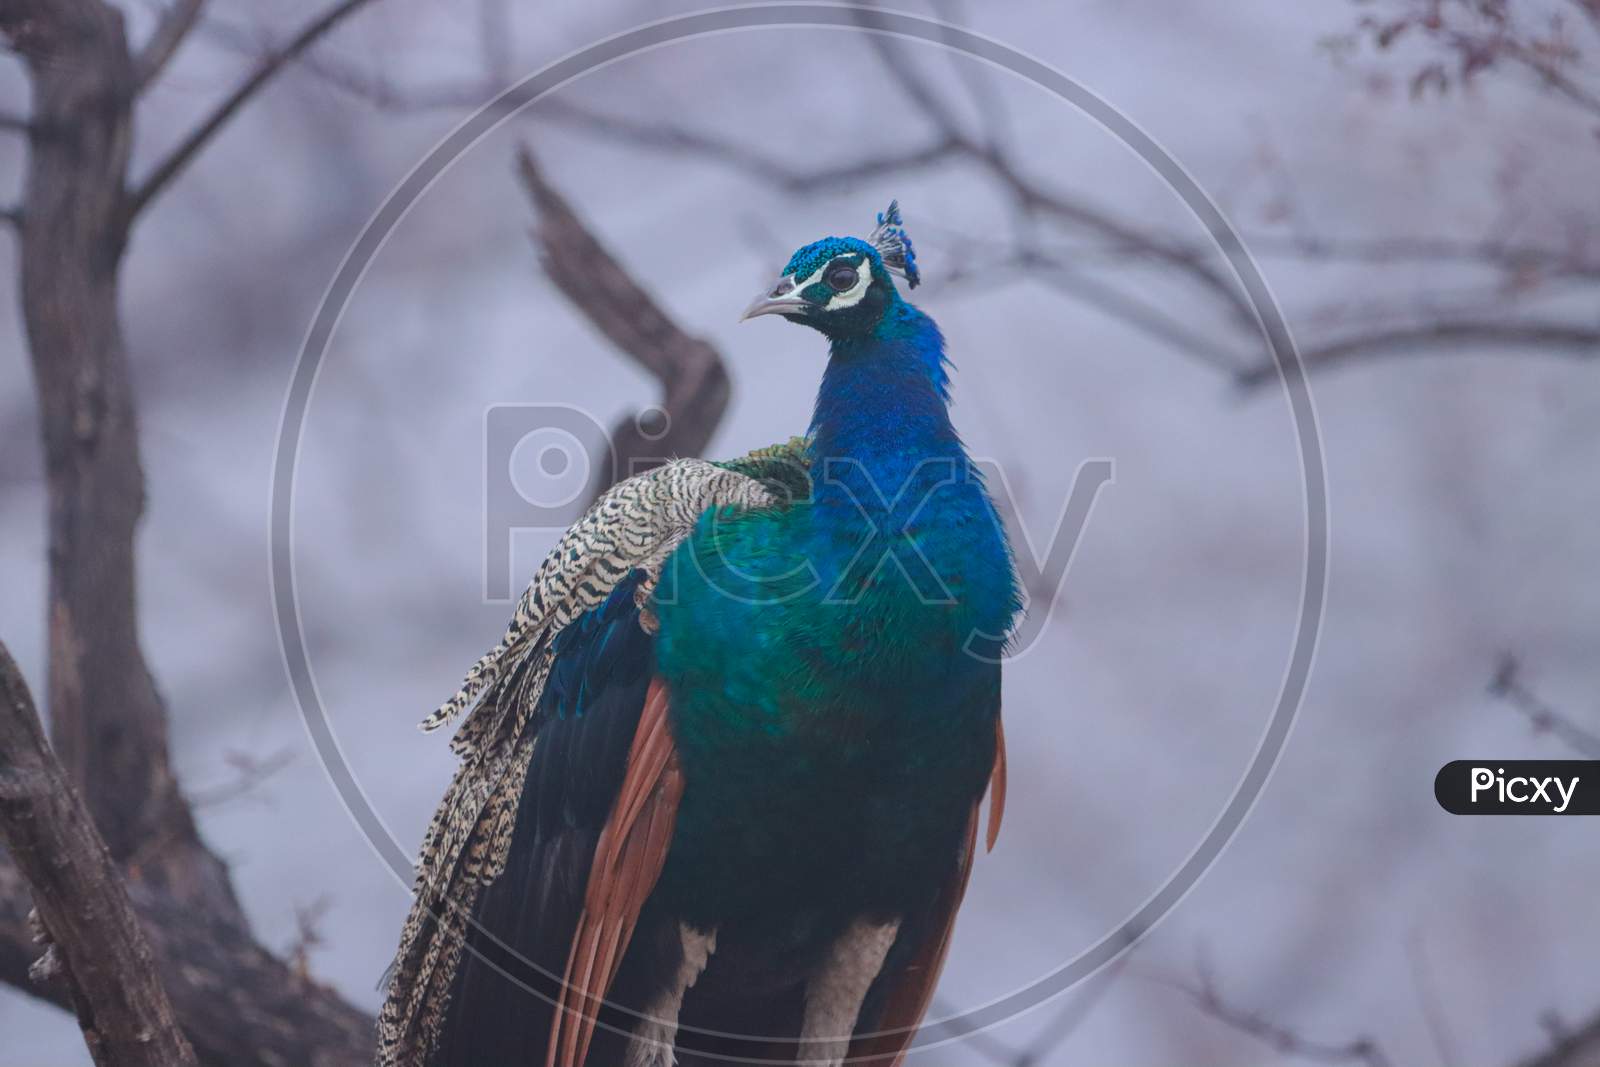 peacock - the national bird